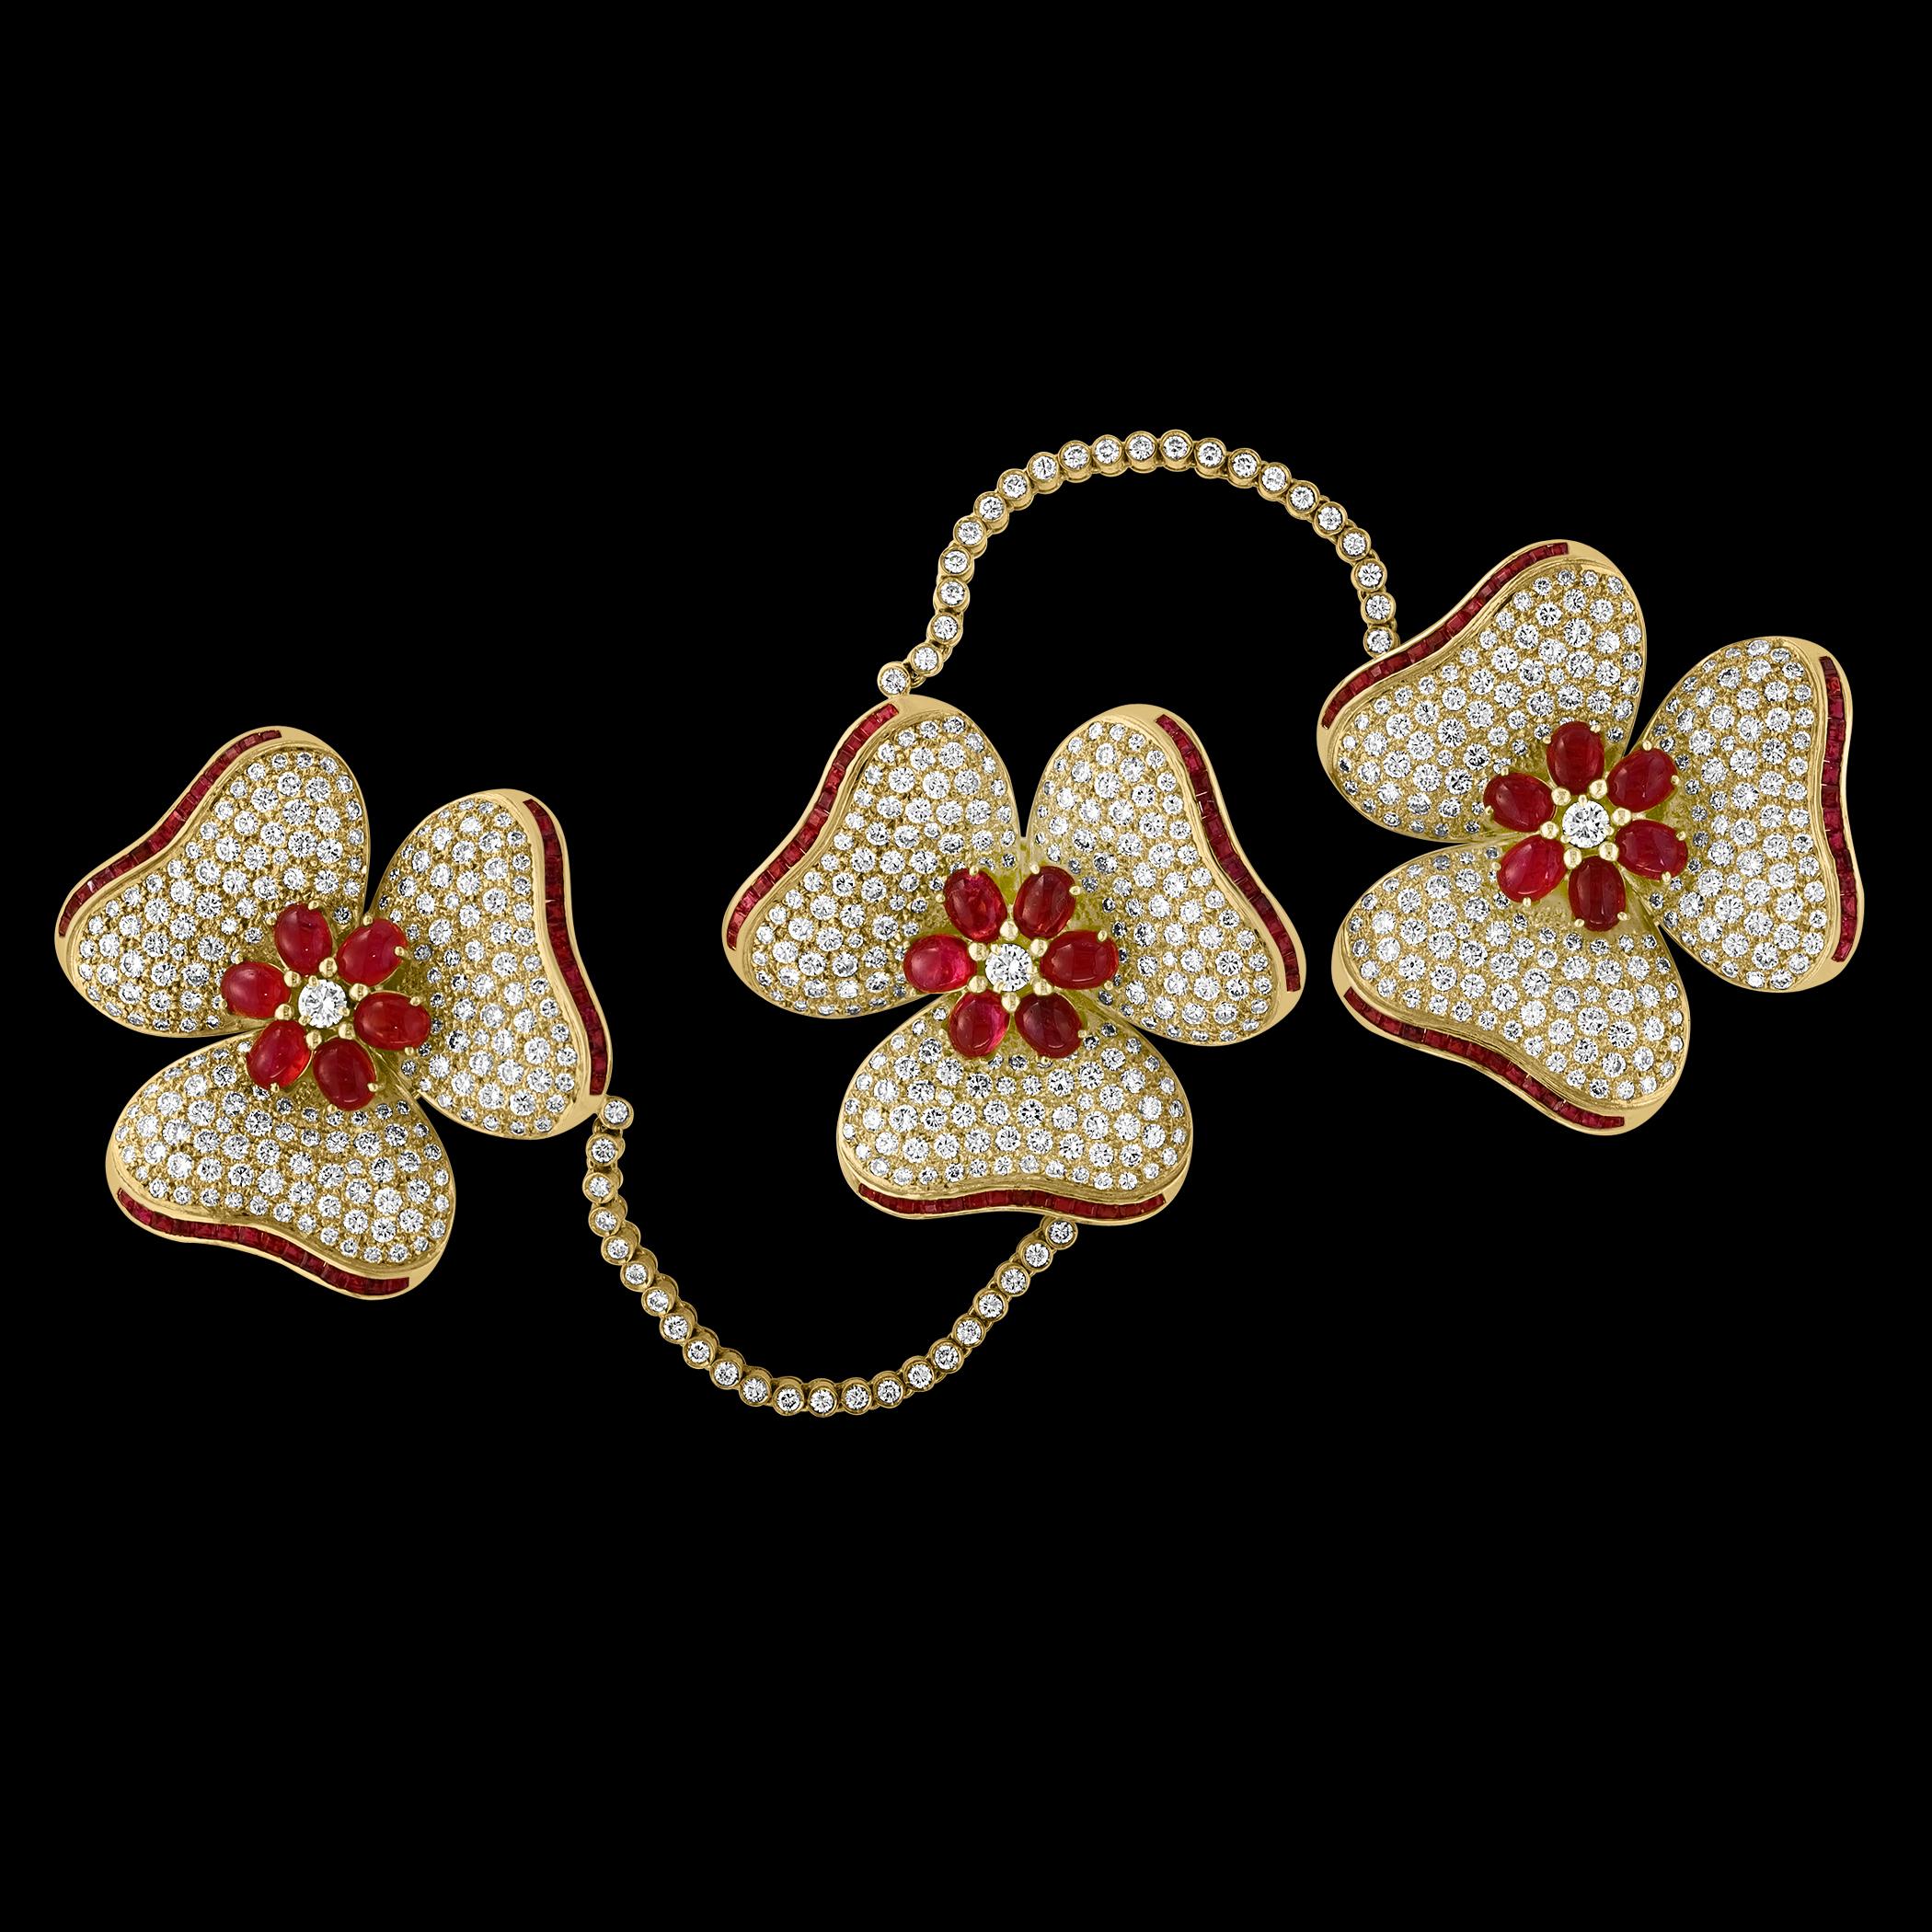 Wir stellen Ihnen die exquisite Natural 12 Ct Burma Ruby & 30 Ct Diamond Trio Pin vor, ein wirklich einzigartiges Stück aus 18 Karat Gelbgold mit einem Gewicht von 78 Gramm. Diese Brosche, die aus unserer Estate Jewelry Collection aus den 1970er